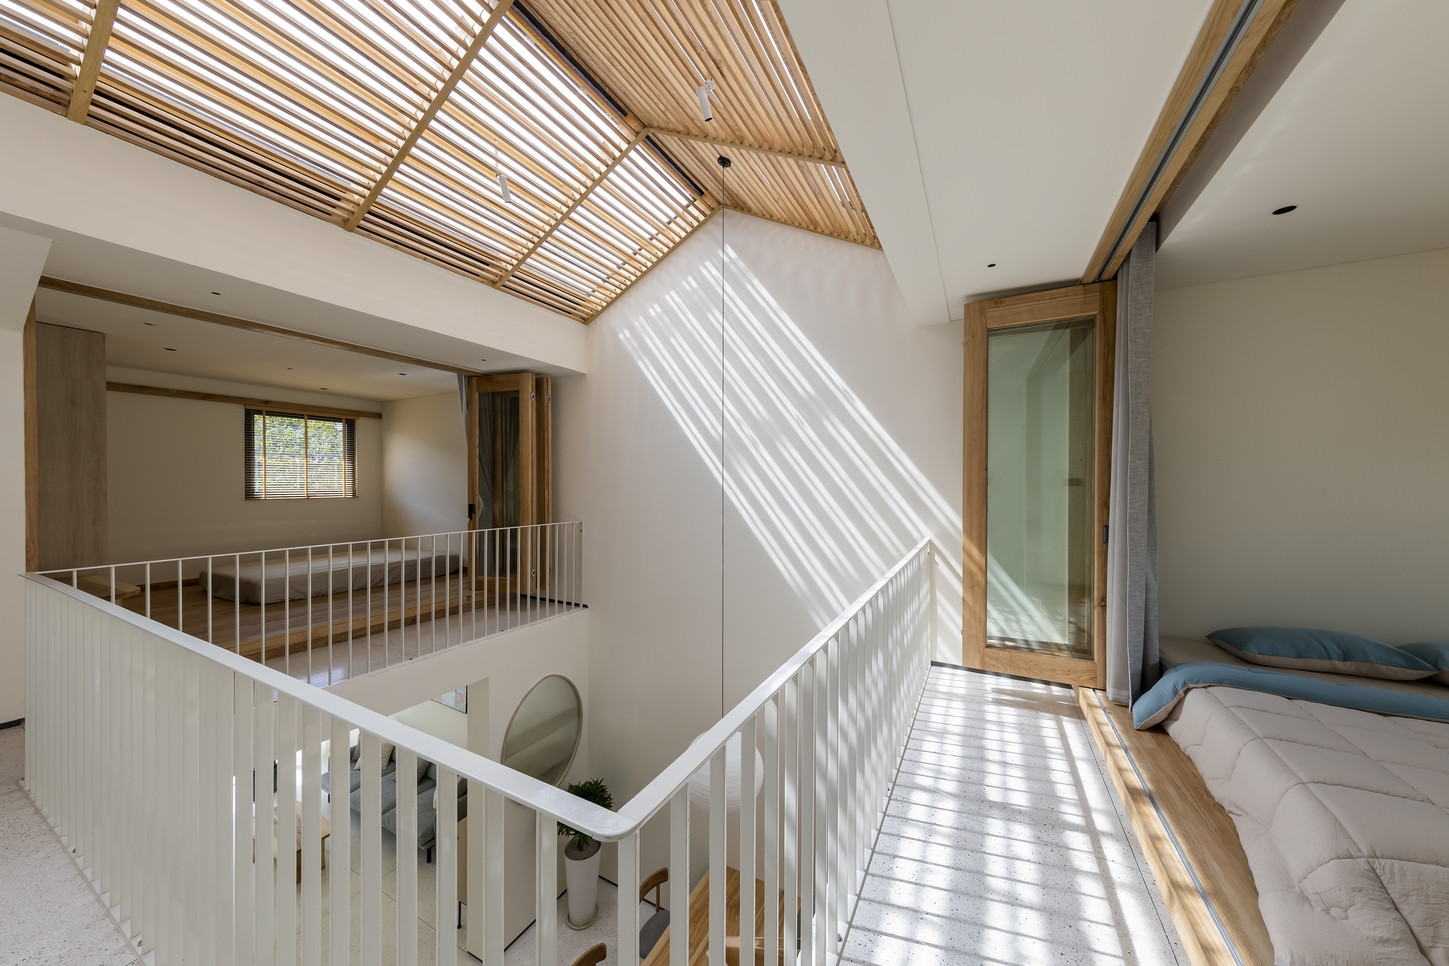 Nhà 2 tầng thiết kế đơn giản, đầy ắp ánh sáng tự nhiên